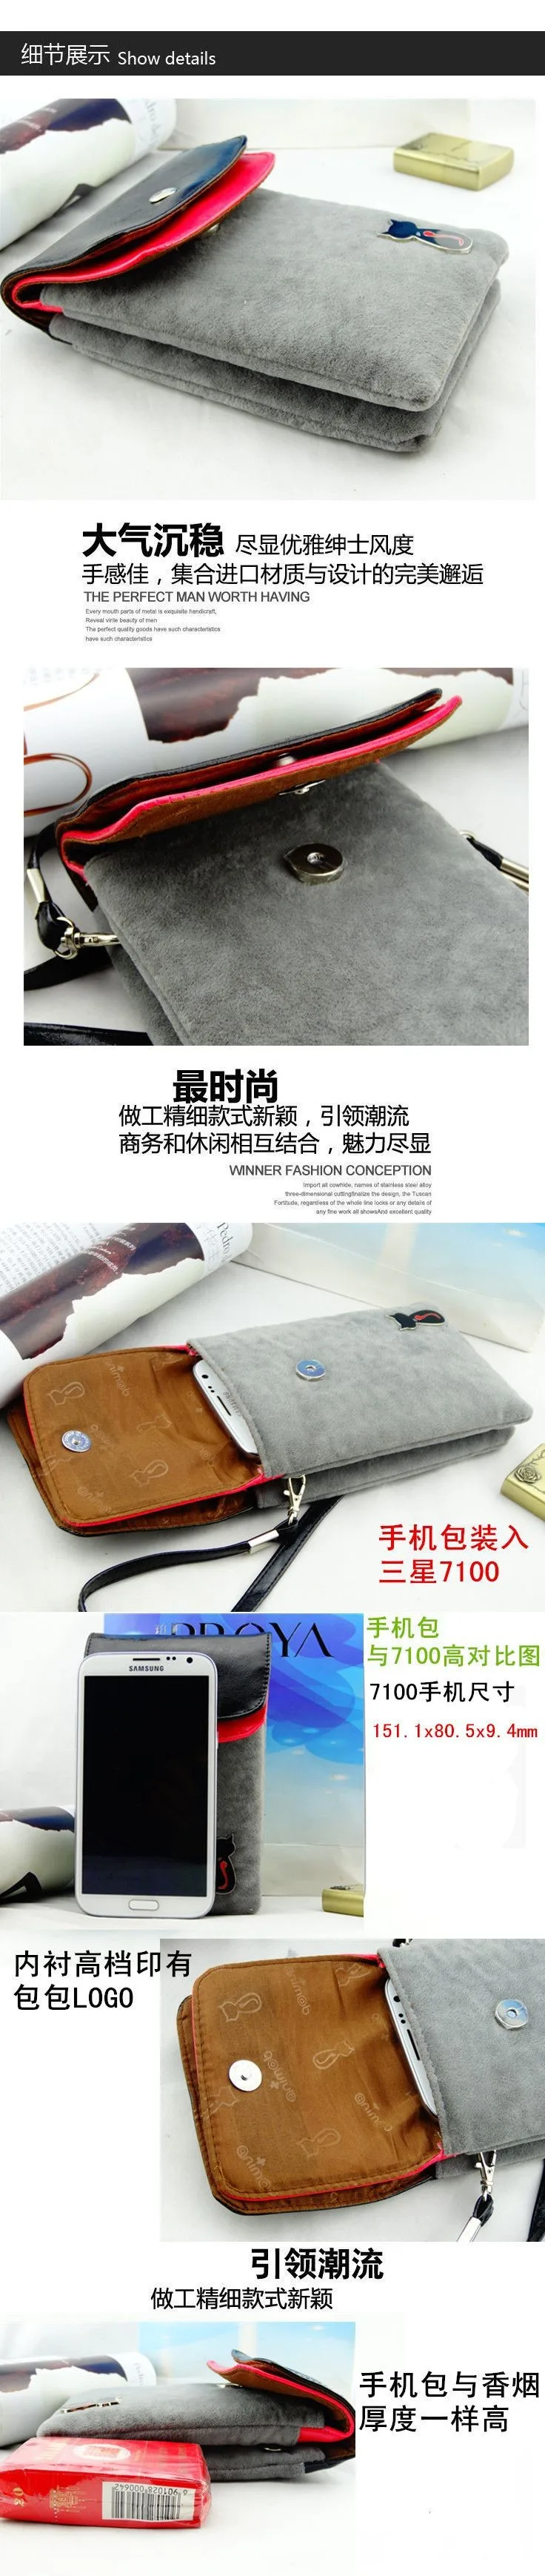 5 цветов Холтер кожаный Универсальный кошелек чехол для телефона сумка на плечо для iphone 5 5S 6 6s 7 Plus samsung S5 S6 S7 Edge